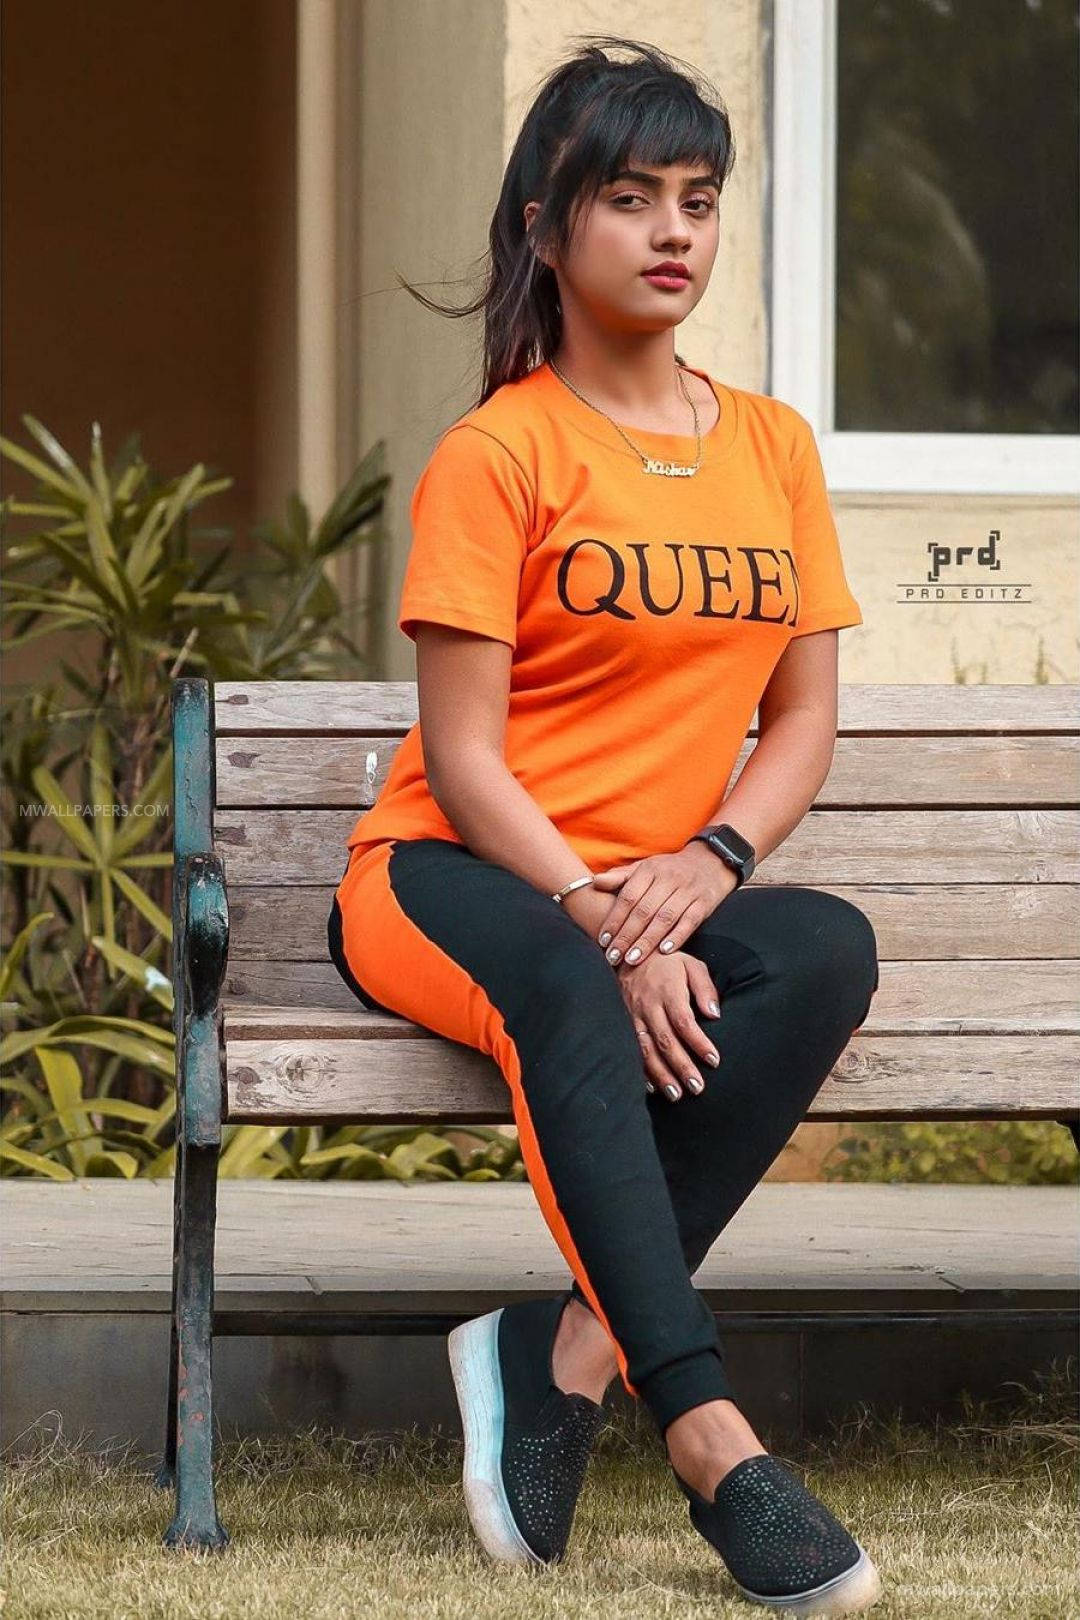 Nisha Guragain In Orange Queen Top Wallpaper